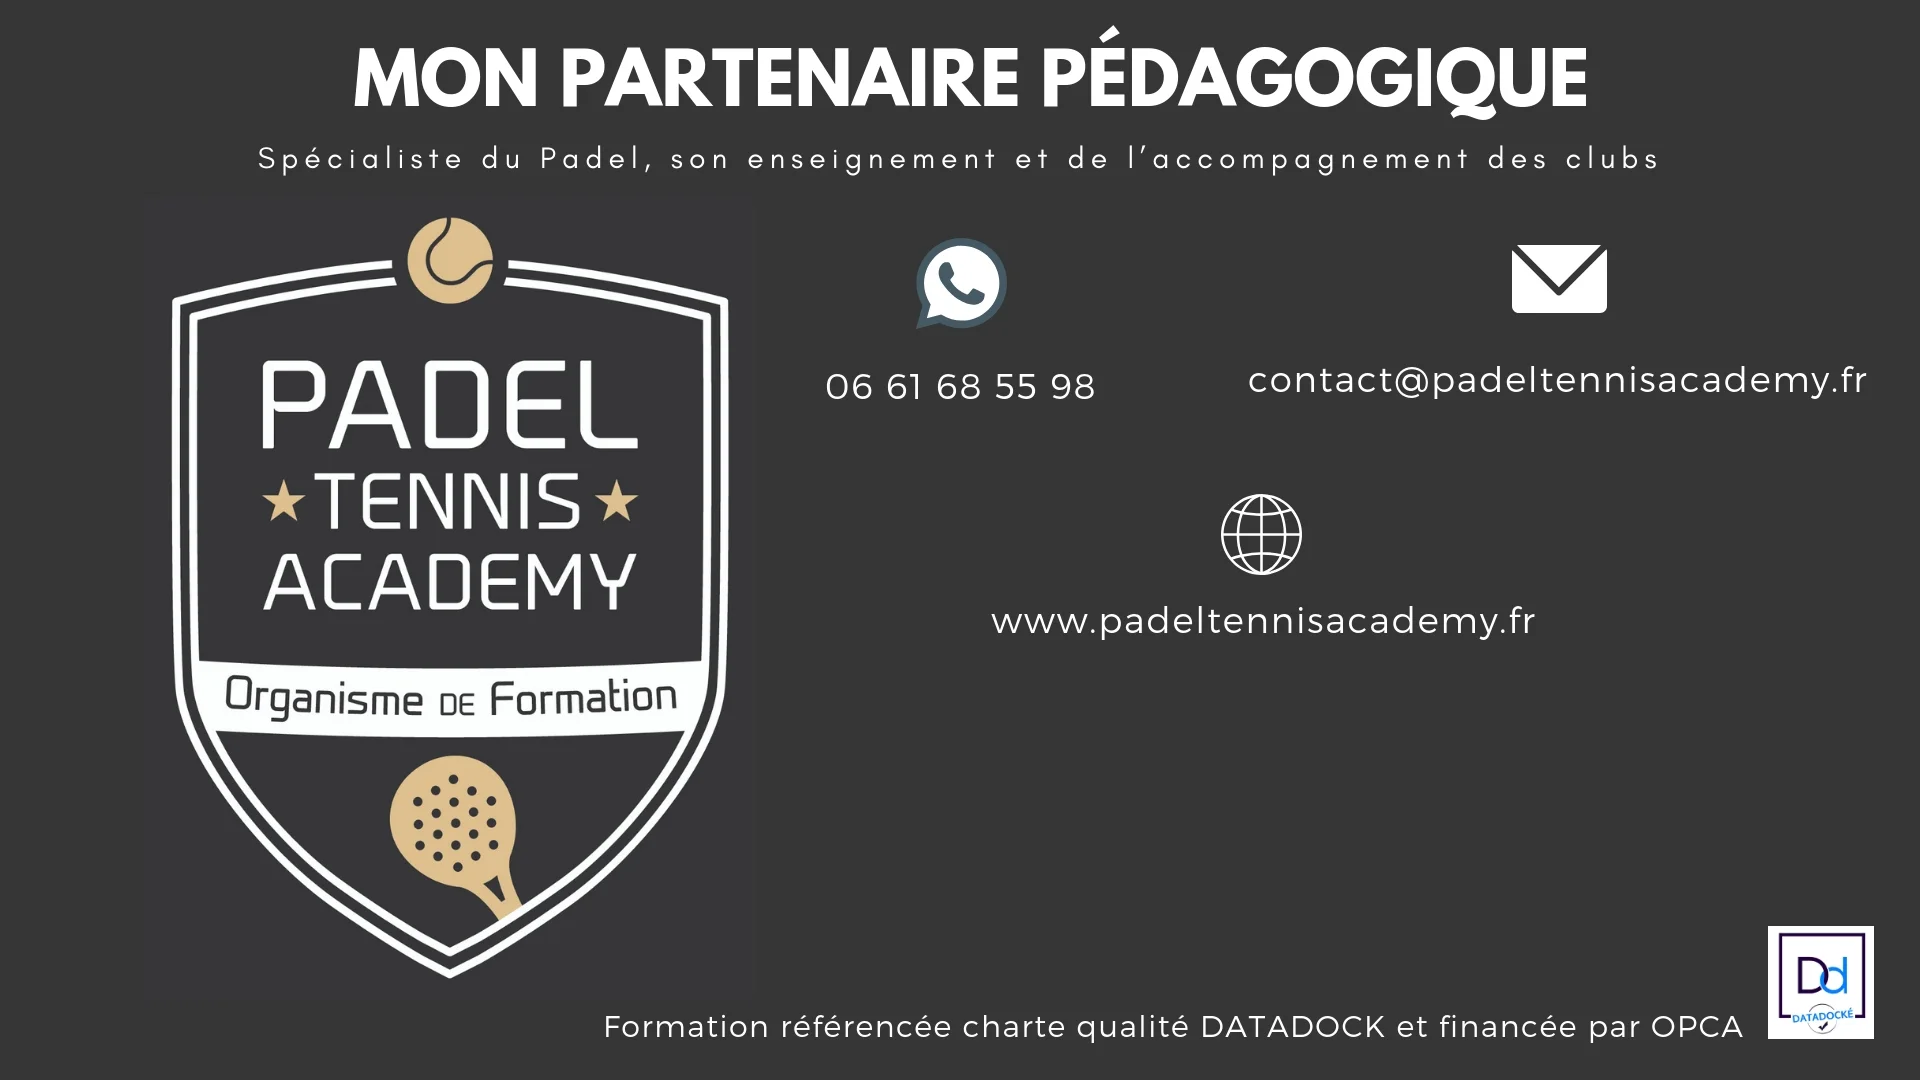 Padel Tennis Academy på Facebook